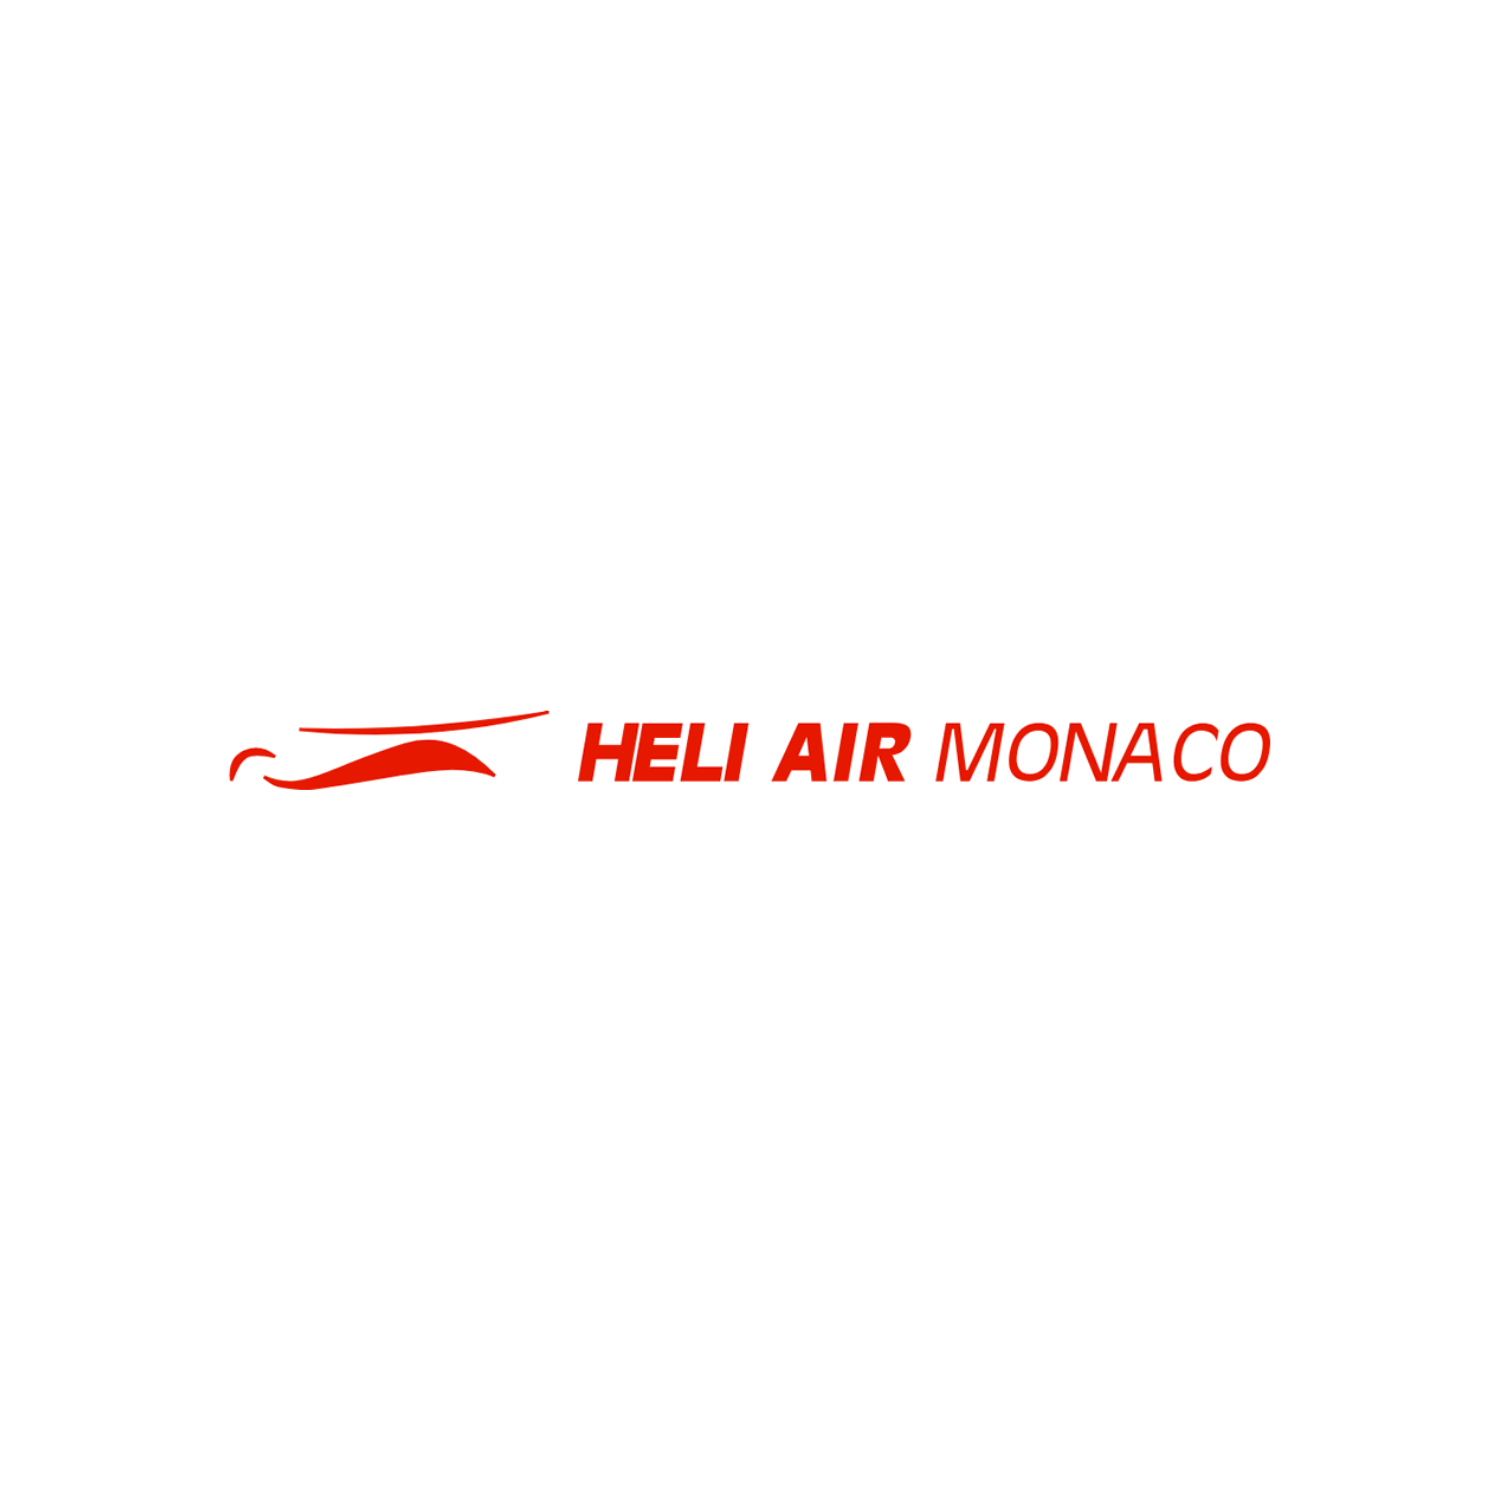 mónaco-carlo-app-commercant-heli-air-service